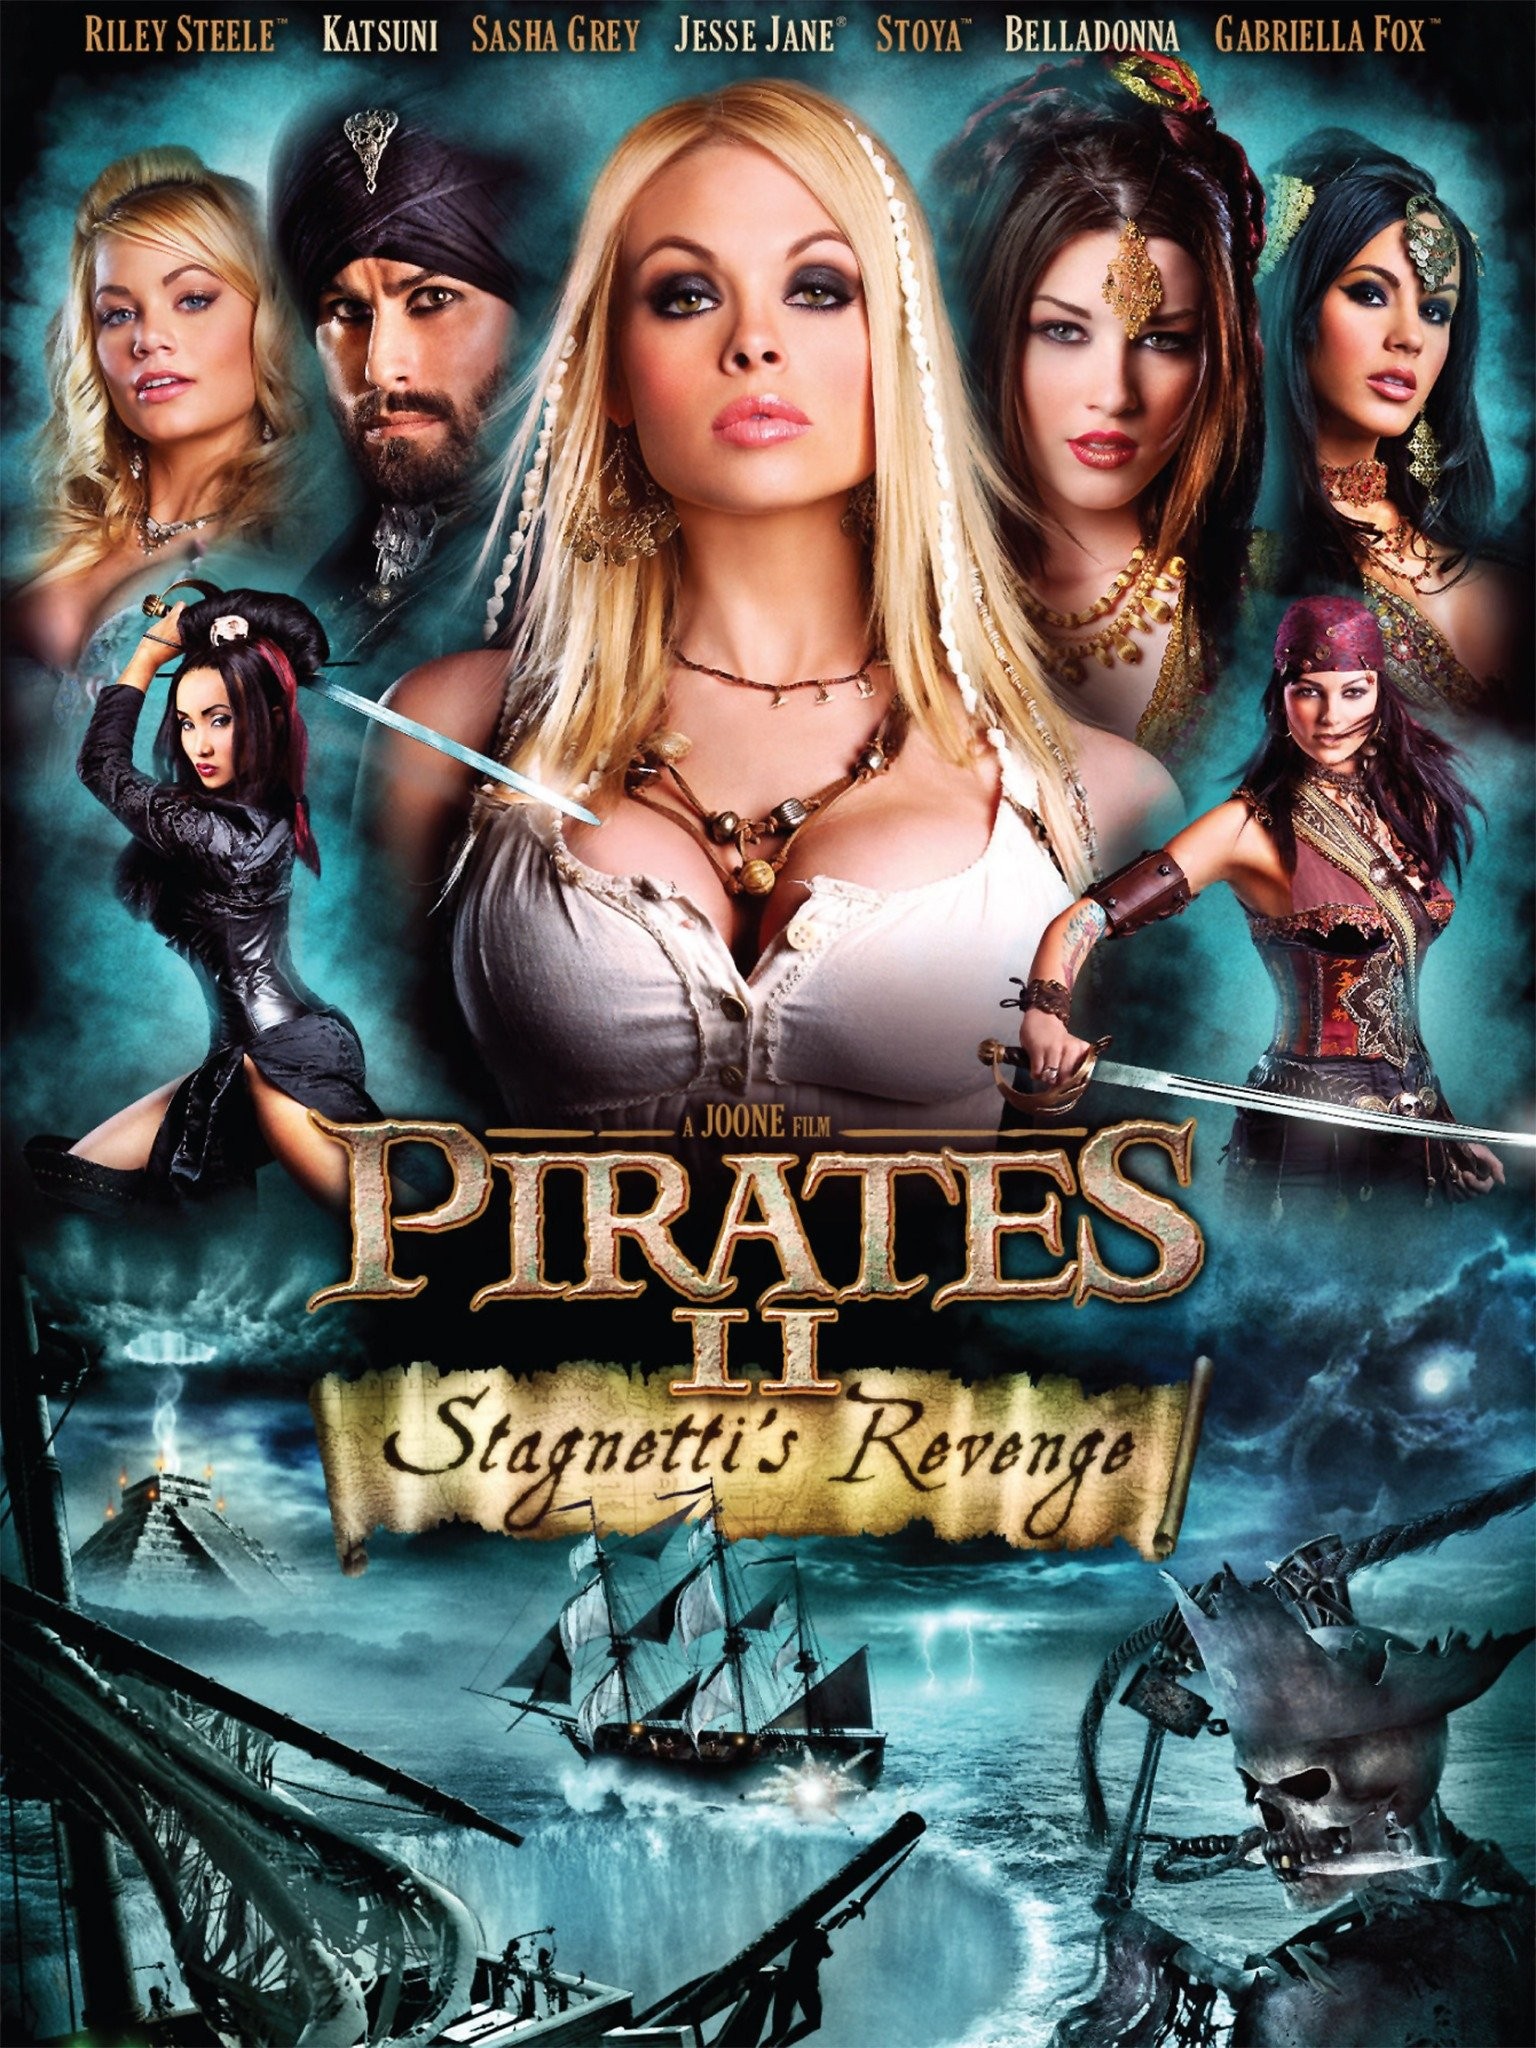 Pirates stagnettis